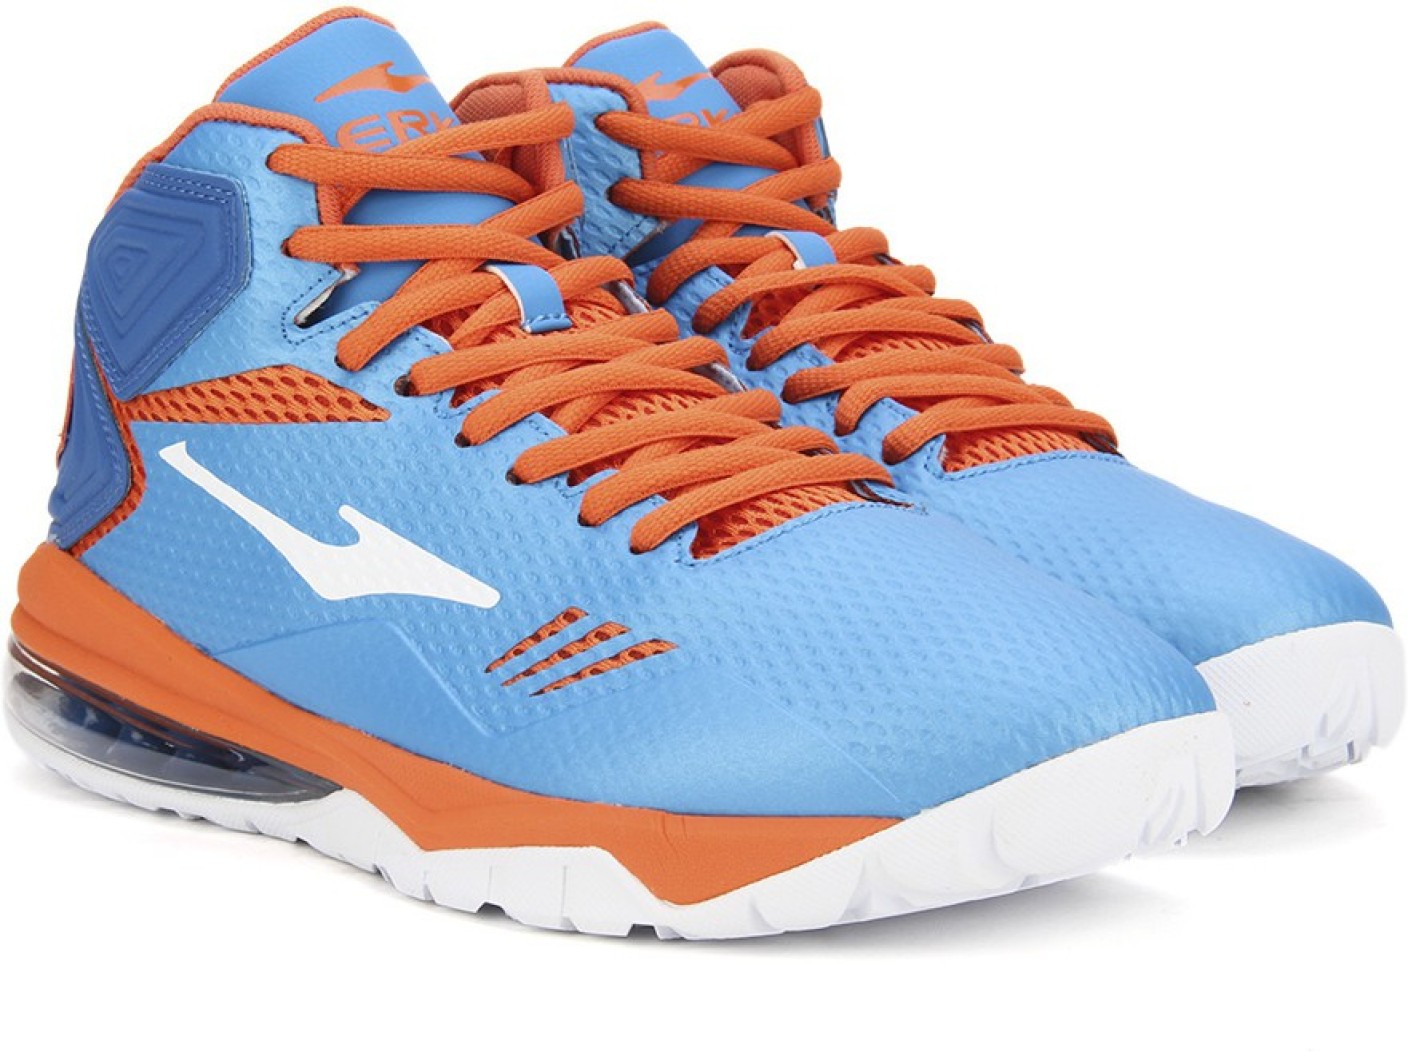 Erke Basketball Shoes For Men - Buy D.Blue/D.Orange Color Erke Basketball Shoes For ...